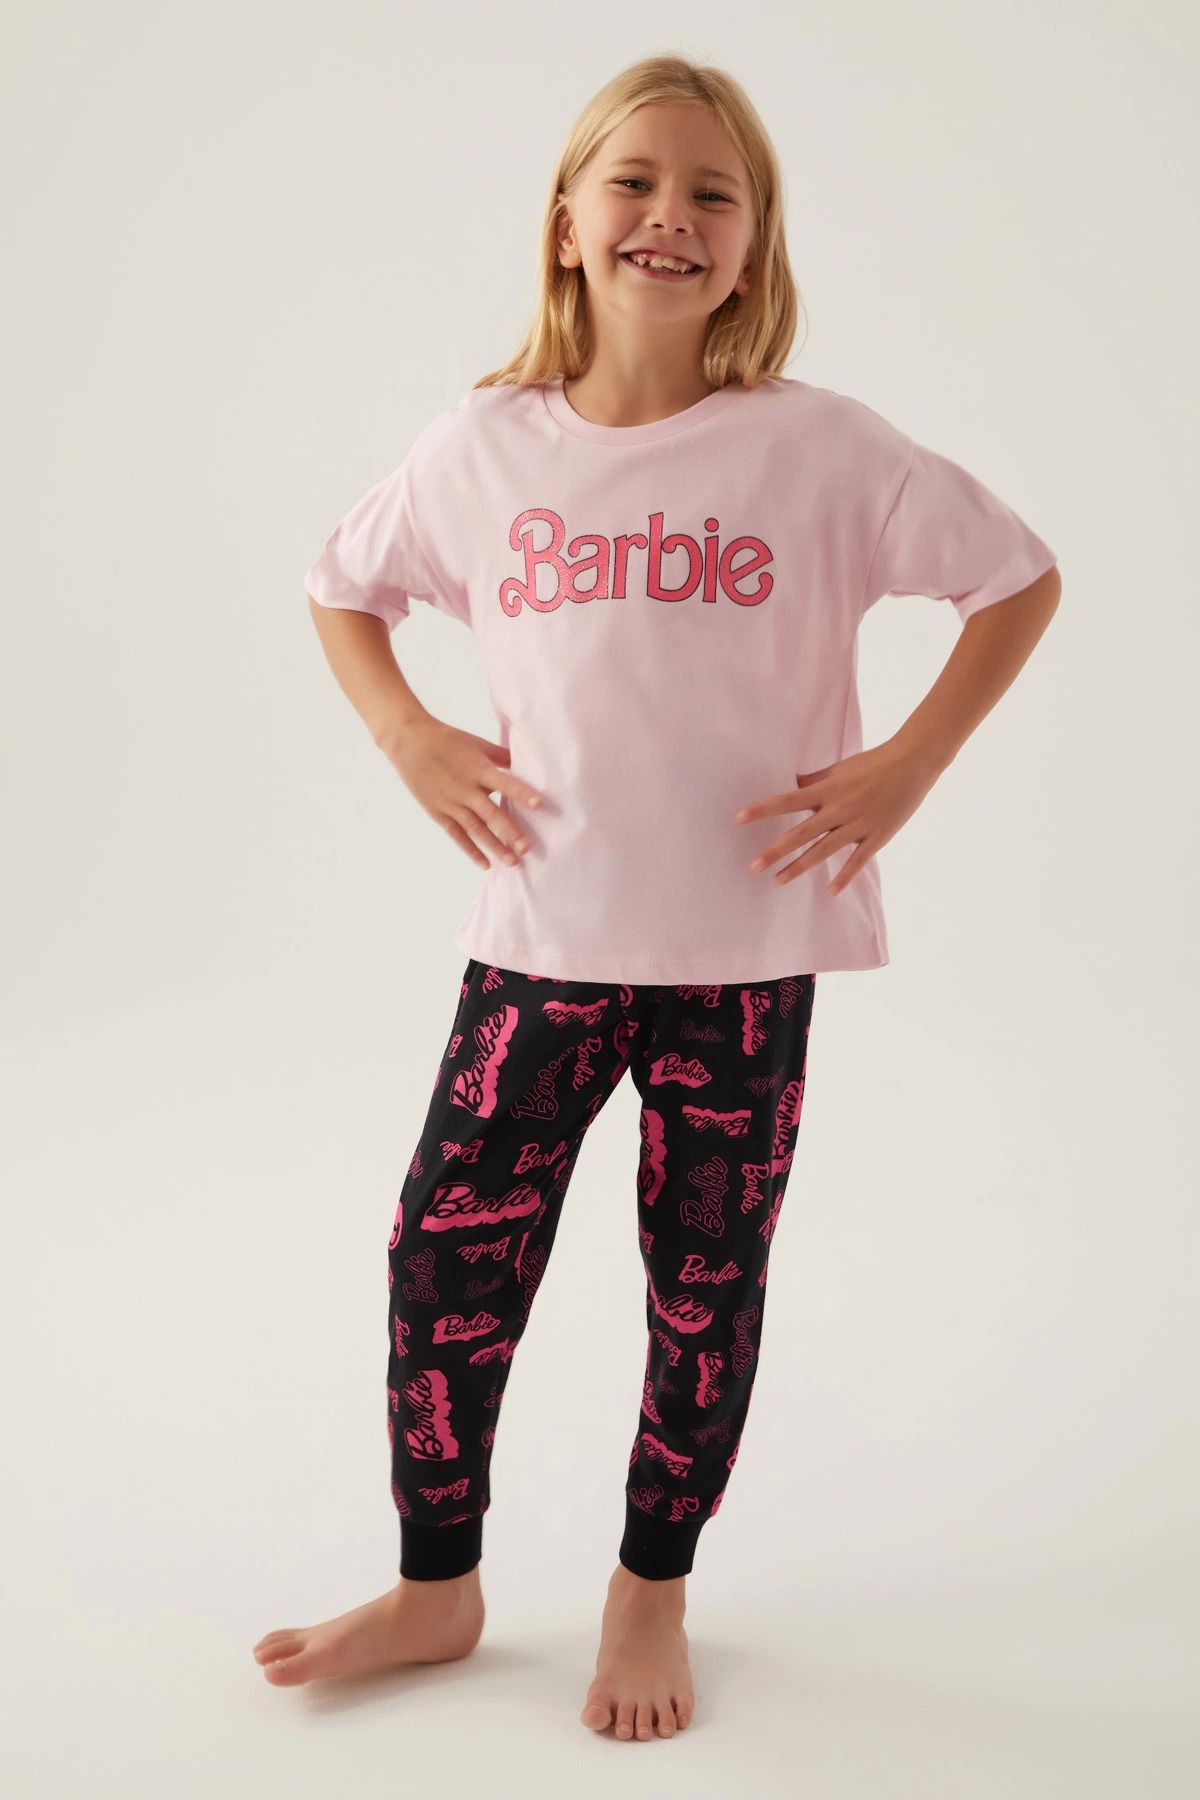 Pierre Cardin Barbie L1704-3 Kız Çocuk Kısa Kol Pijama Takımı